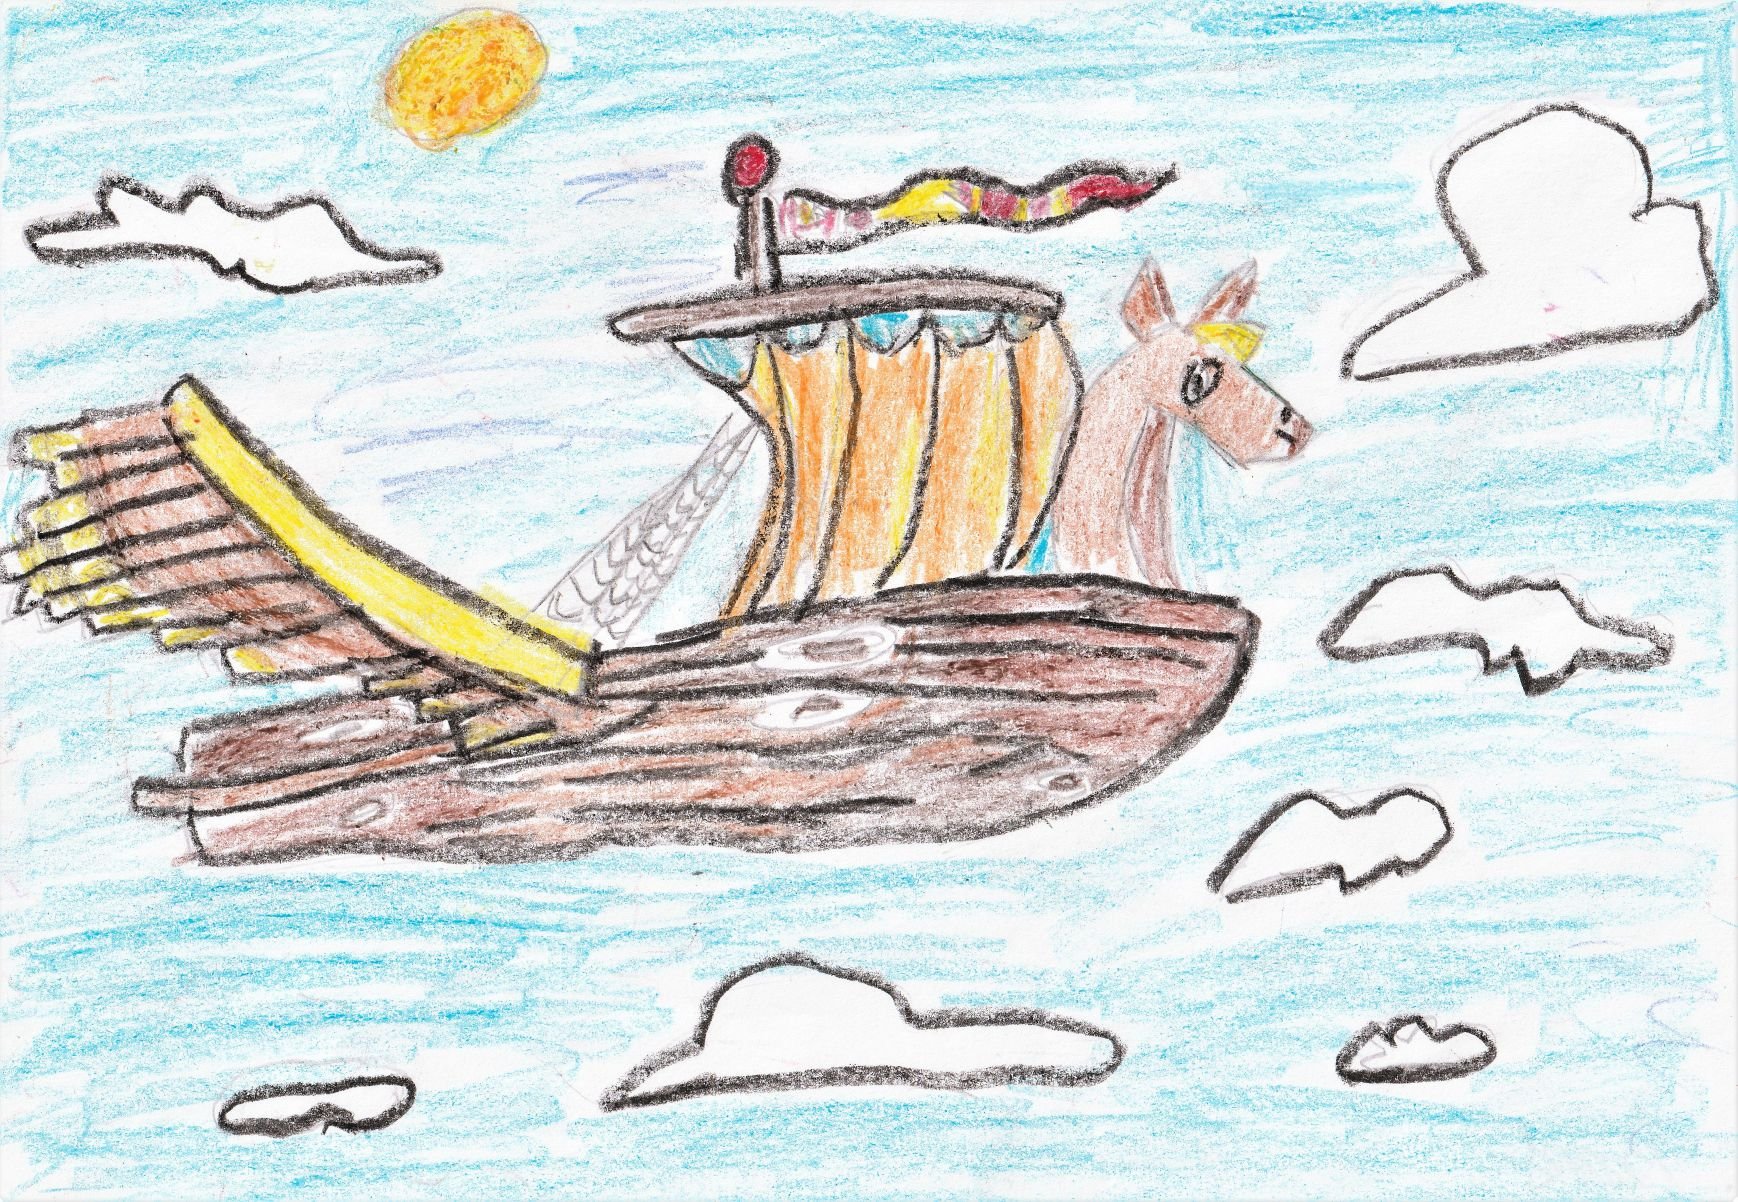 Летучий корабль рисунок к сказке детский